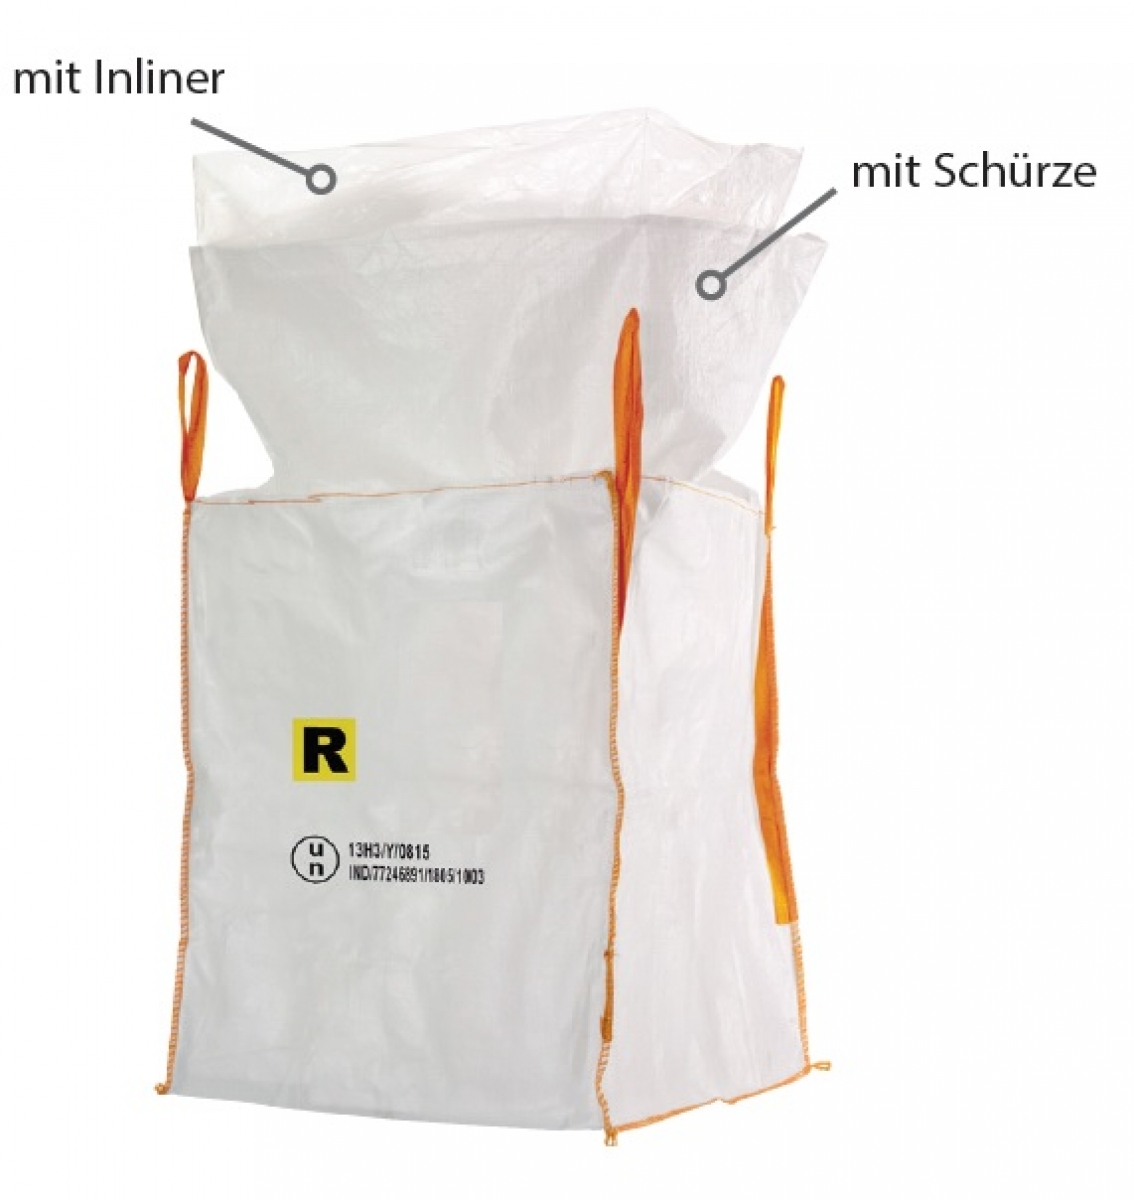 F-Big-Bag, UN Gefahrgut, 13H3Y, SF 6:1, mit Inliner und Schrze, 90 x 90 x 110 cm, Tragkraft: 1000 KG